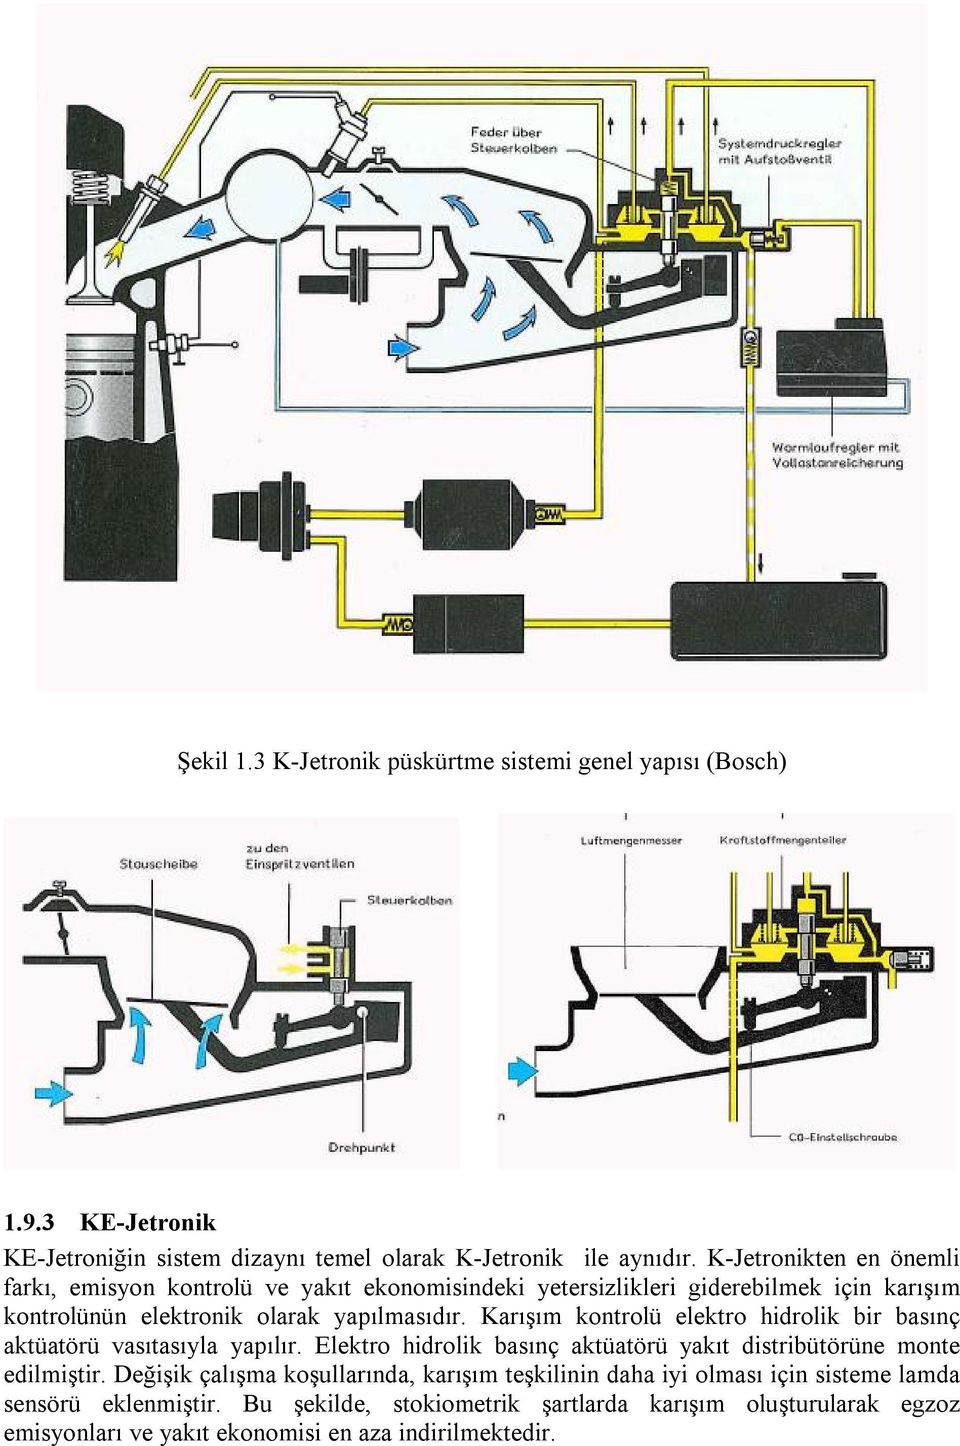 Karışım kontrolü elektro hidrolik bir basınç aktüatörü vasıtasıyla yapılır. Elektro hidrolik basınç aktüatörü yakıt distribütörüne monte edilmiştir.